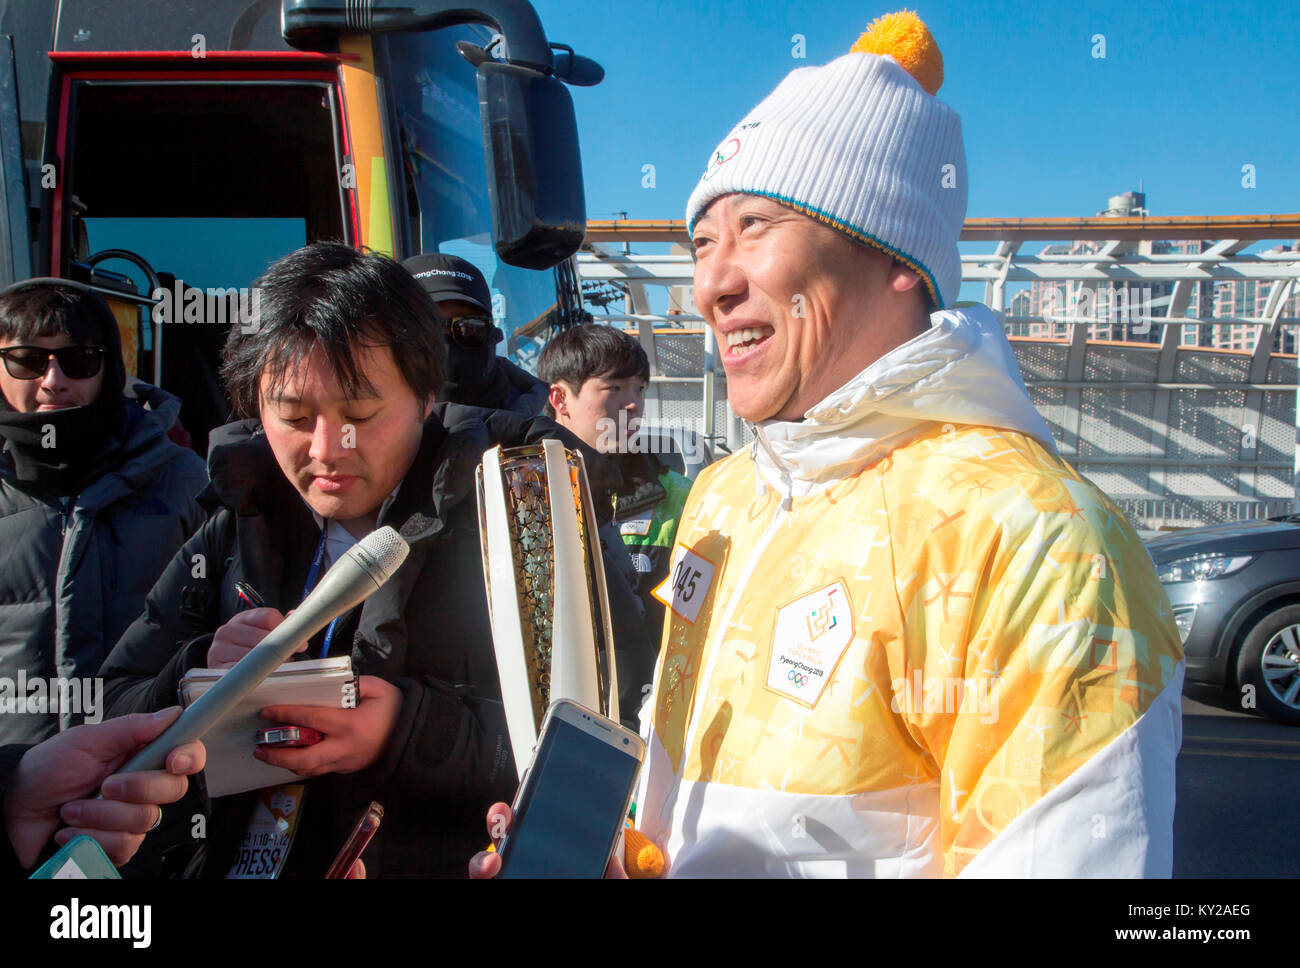 Incheon, Corea del Sur. 12 de enero de 2017. Daichi Suzuki, Jan 12, 2018 : Daichi Suzuki, jubilado japonés espalda nadador que ganó una medalla de oro en las Olimpiadas de Verano de 1988 en Seúl, habla a los medios de comunicación tras asistir a un relevo de la antorcha de los Juegos Olímpicos de Invierno PyeongChang 2018, en Incheon, al oeste de Seúl, Corea del Sur. Crédito: Lee Jae-Won/AFLO/Alamy Live News Foto de stock